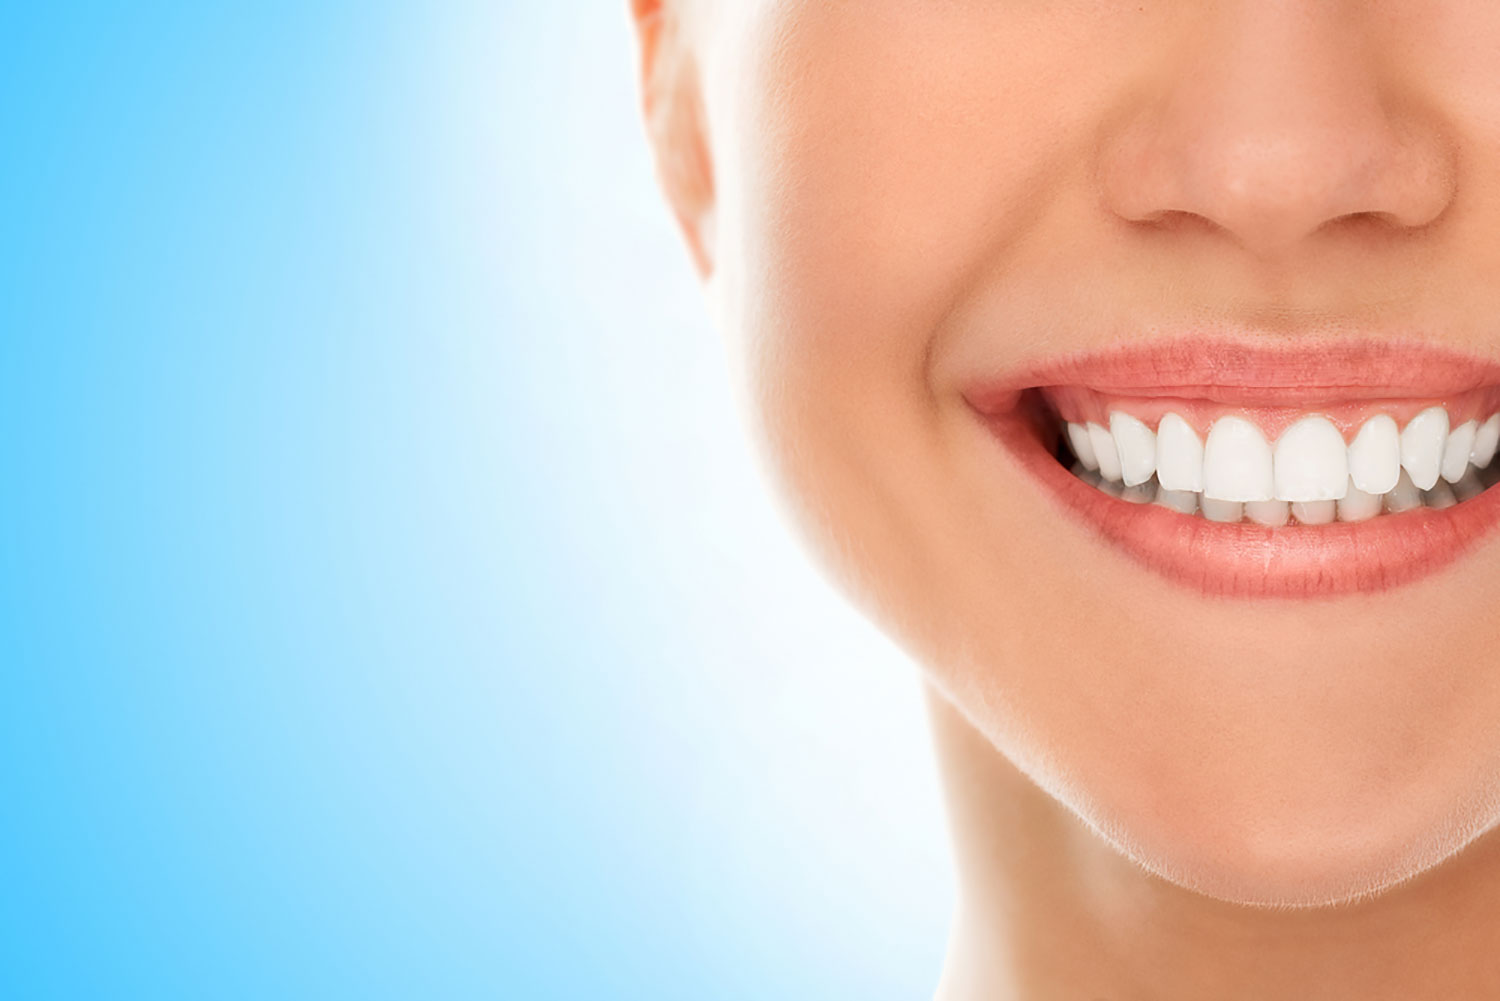 Adequado para cada paciente, rápidos e com controle da sensibilidade. Dentes brancos e um sorriso iluminado.